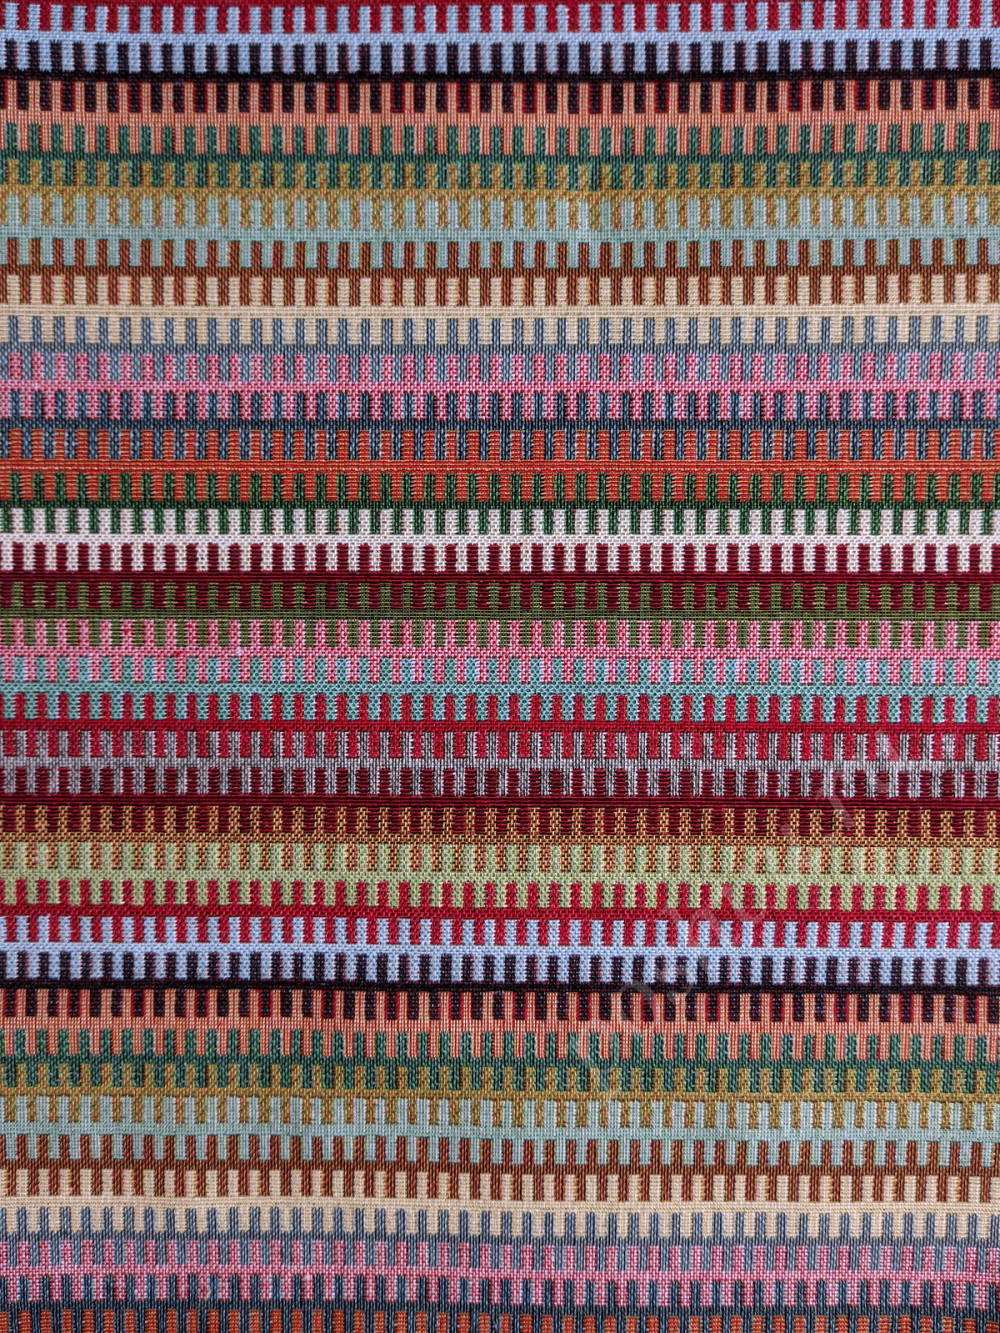 Портьерная ткань гобелен TAPESTRY CREMCO разноцветные полосы зиг-заг (раппорт 8х27см)